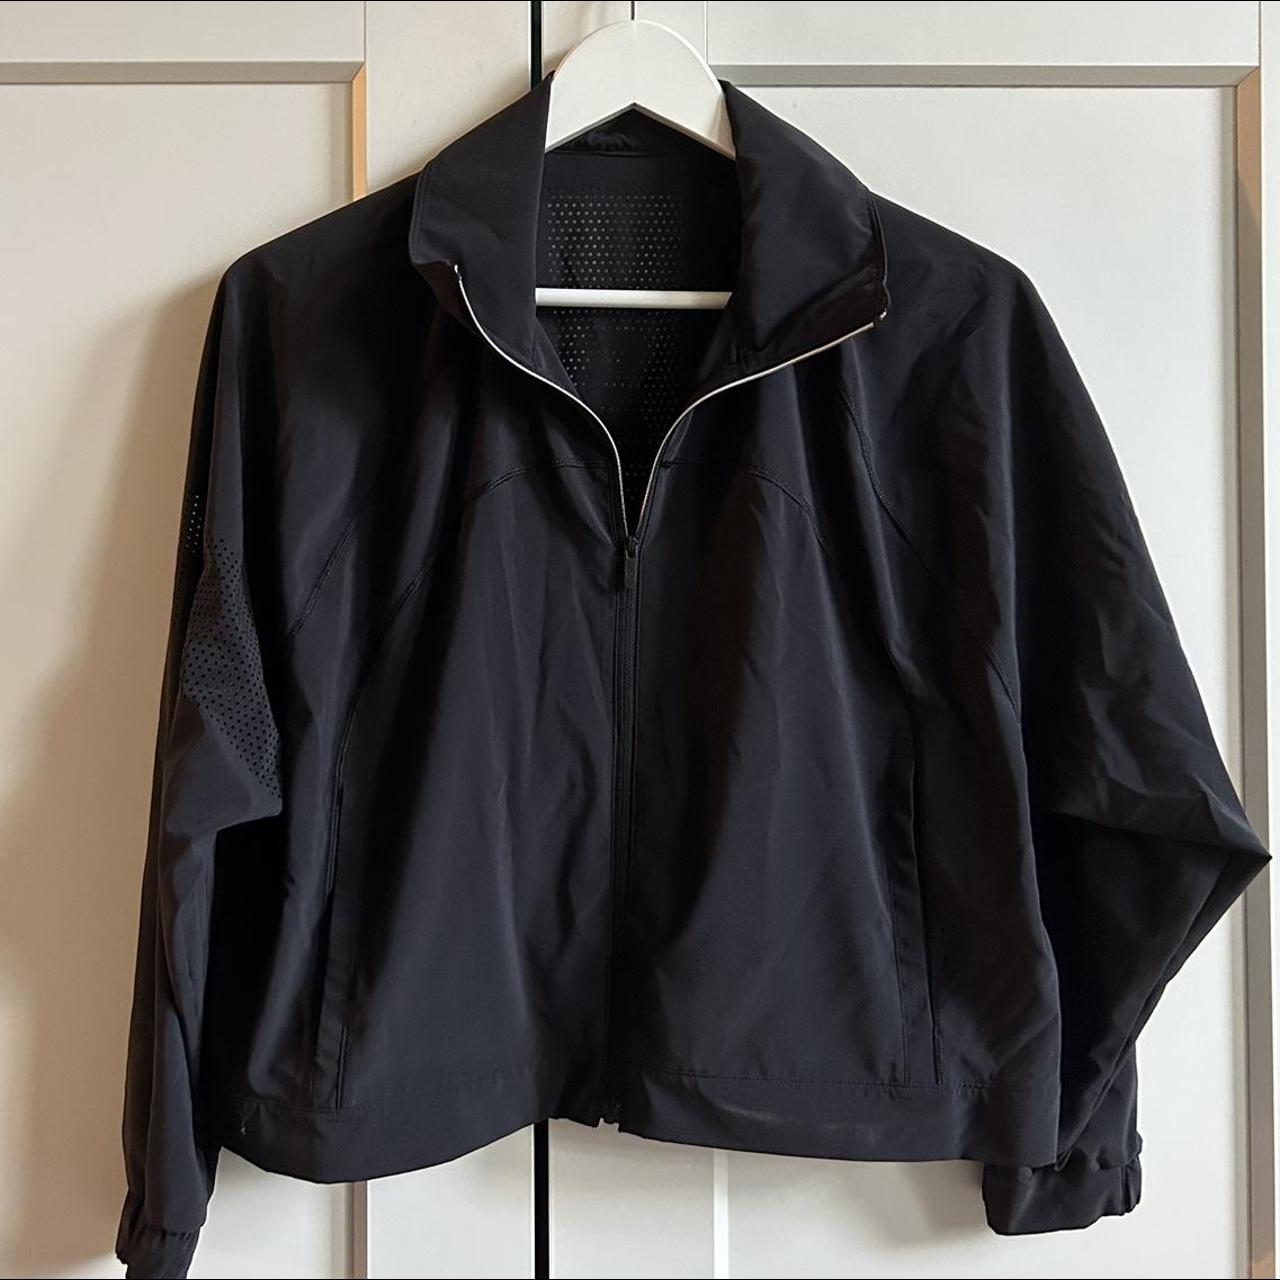 Lululemon black jacket with detail on the back -... - Depop